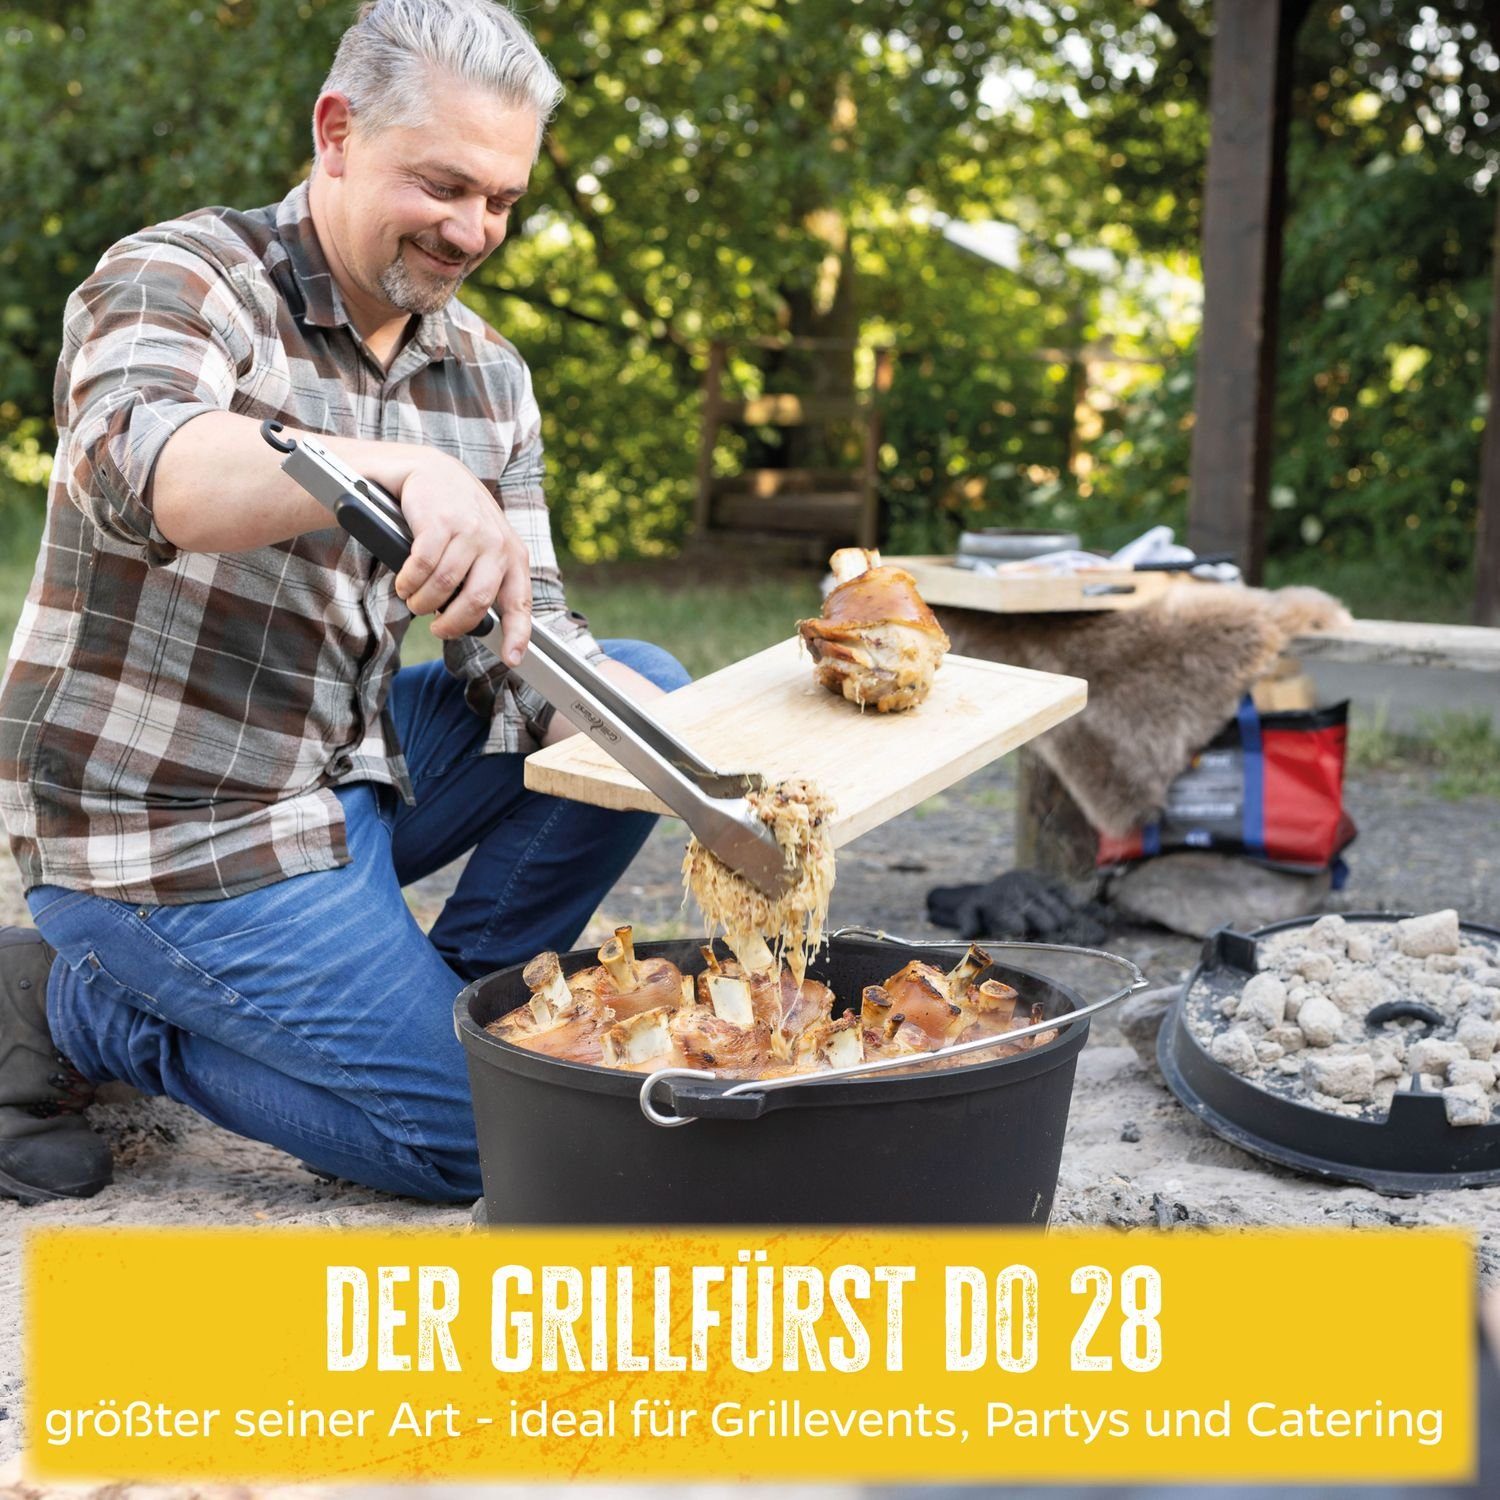 Grillfürst DO28 Grillfürst Oven Bratentopf Edition BBQ Dutch